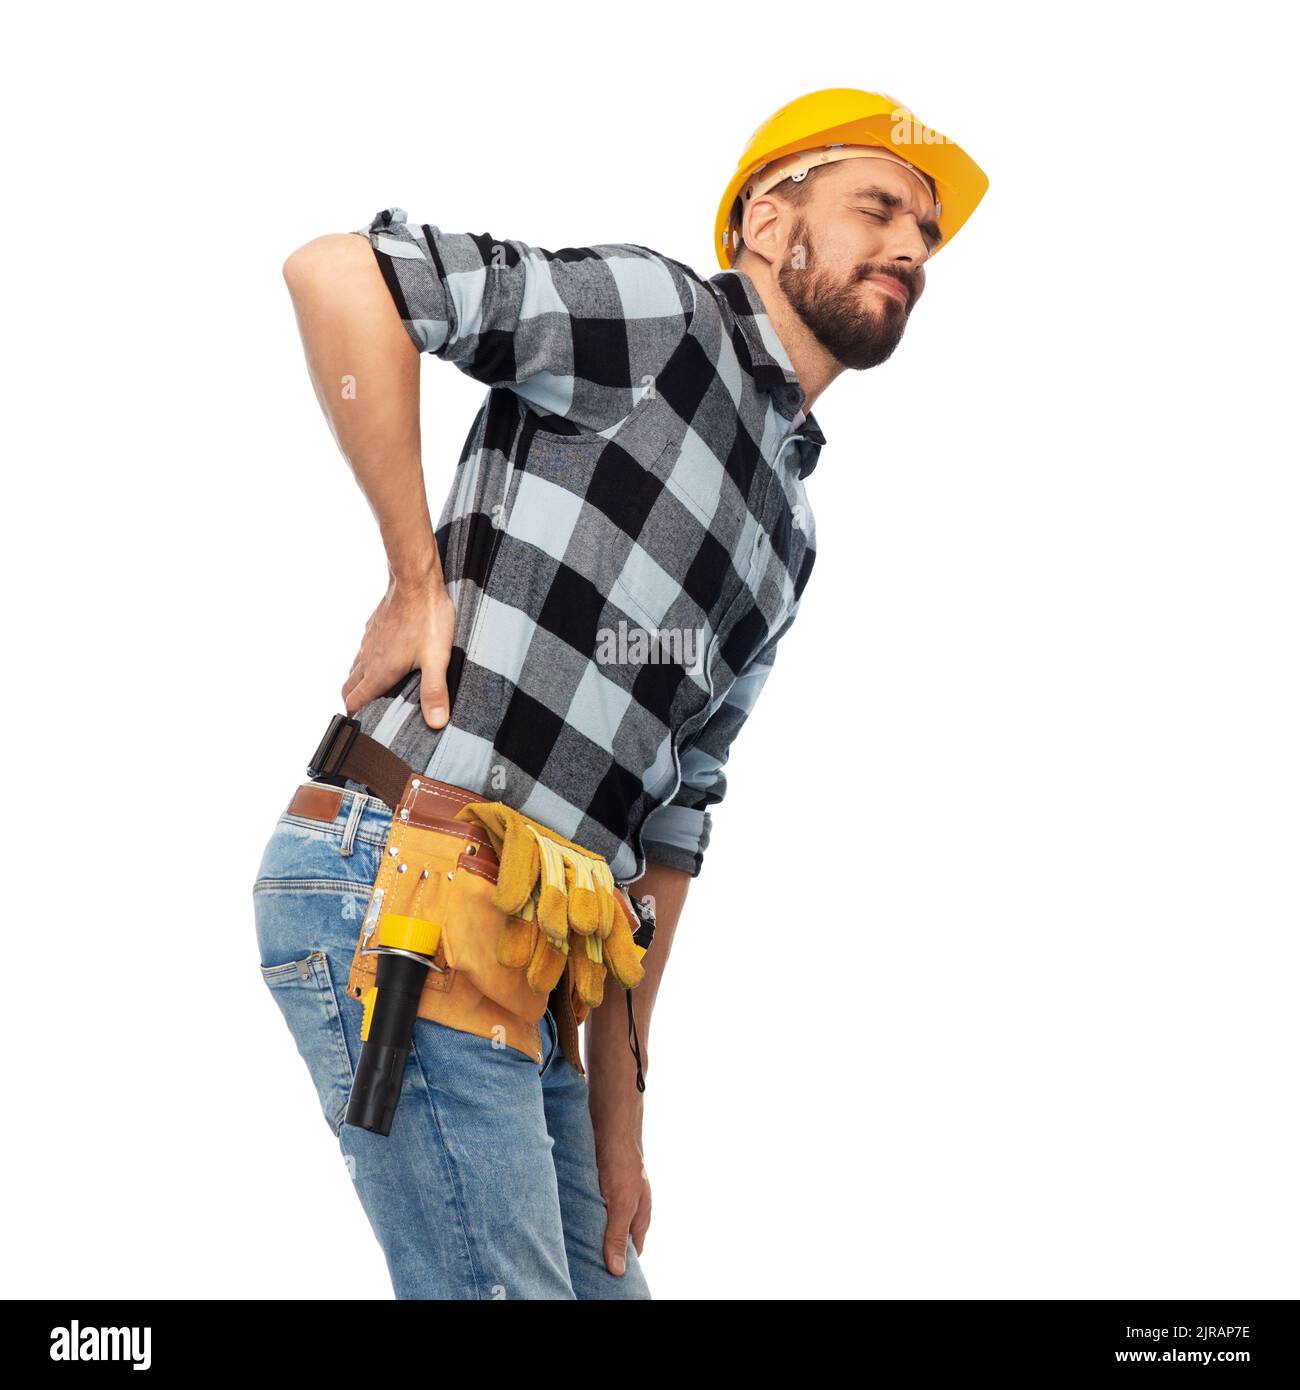 Männlicher Arbeiter oder Baumeister mit Rückenschmerzen Stockfoto